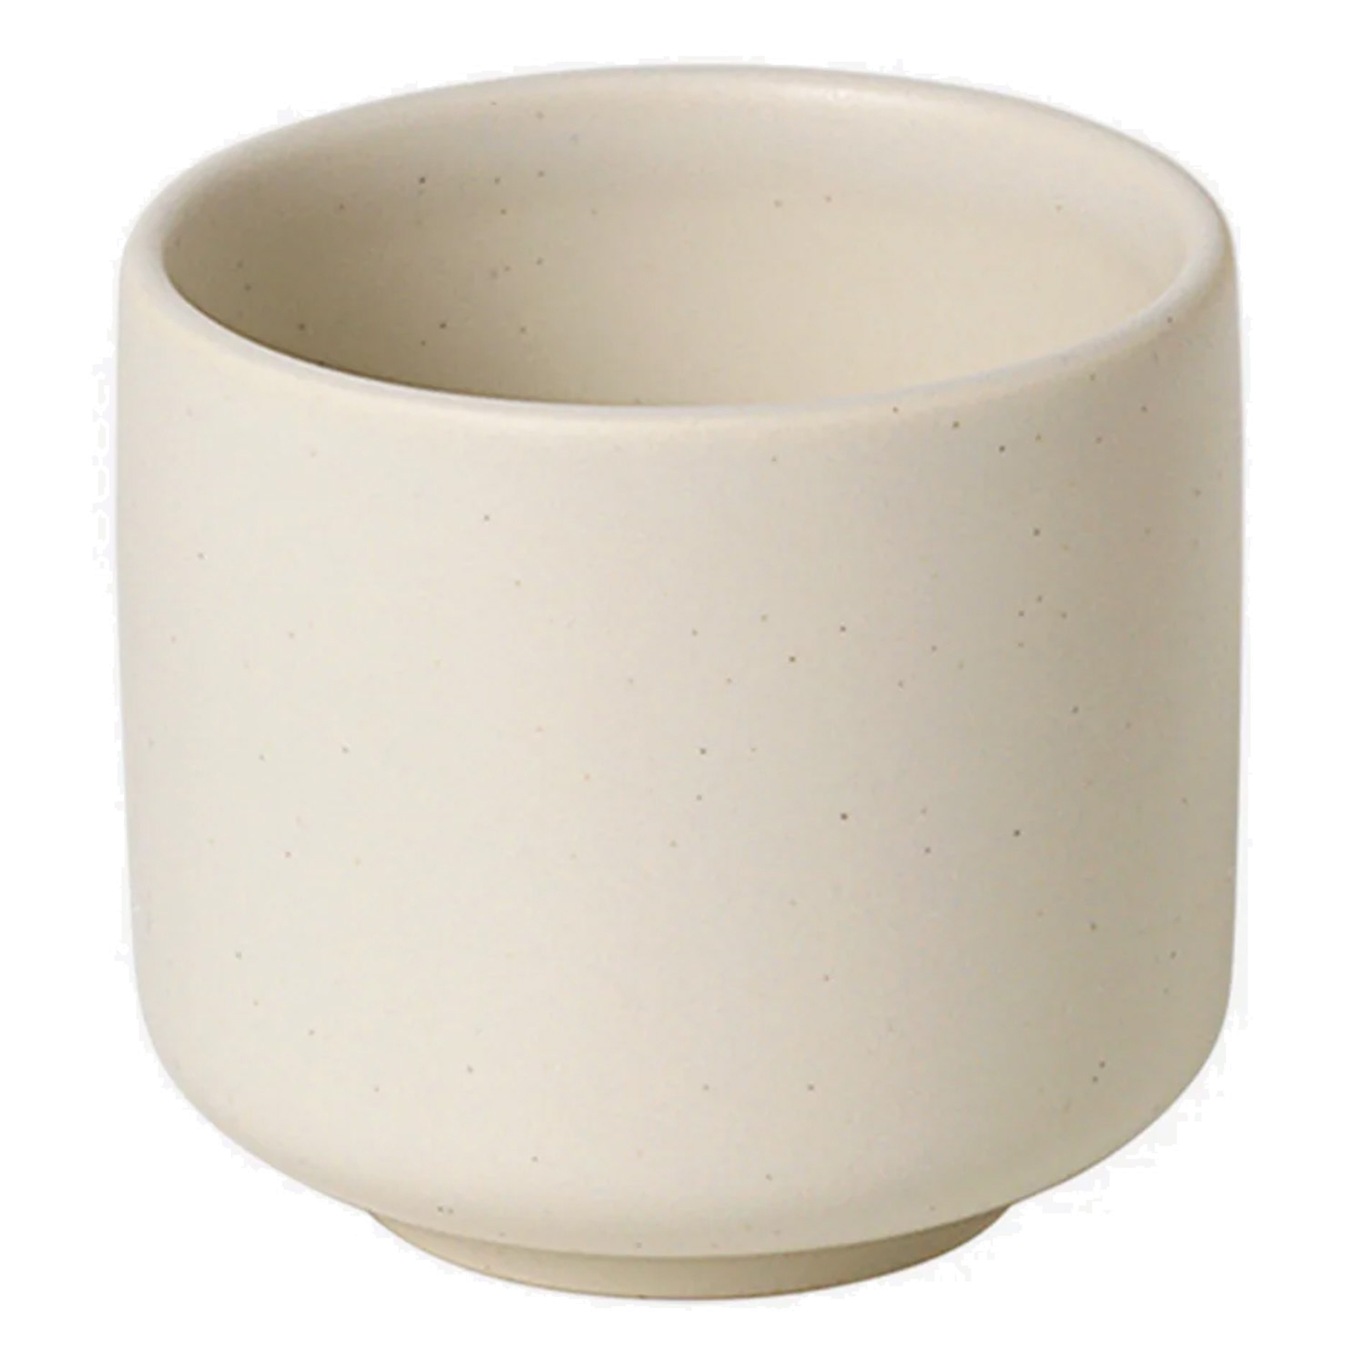 Ceramic Pisu Tasse 7.5 cm, Vanilla White